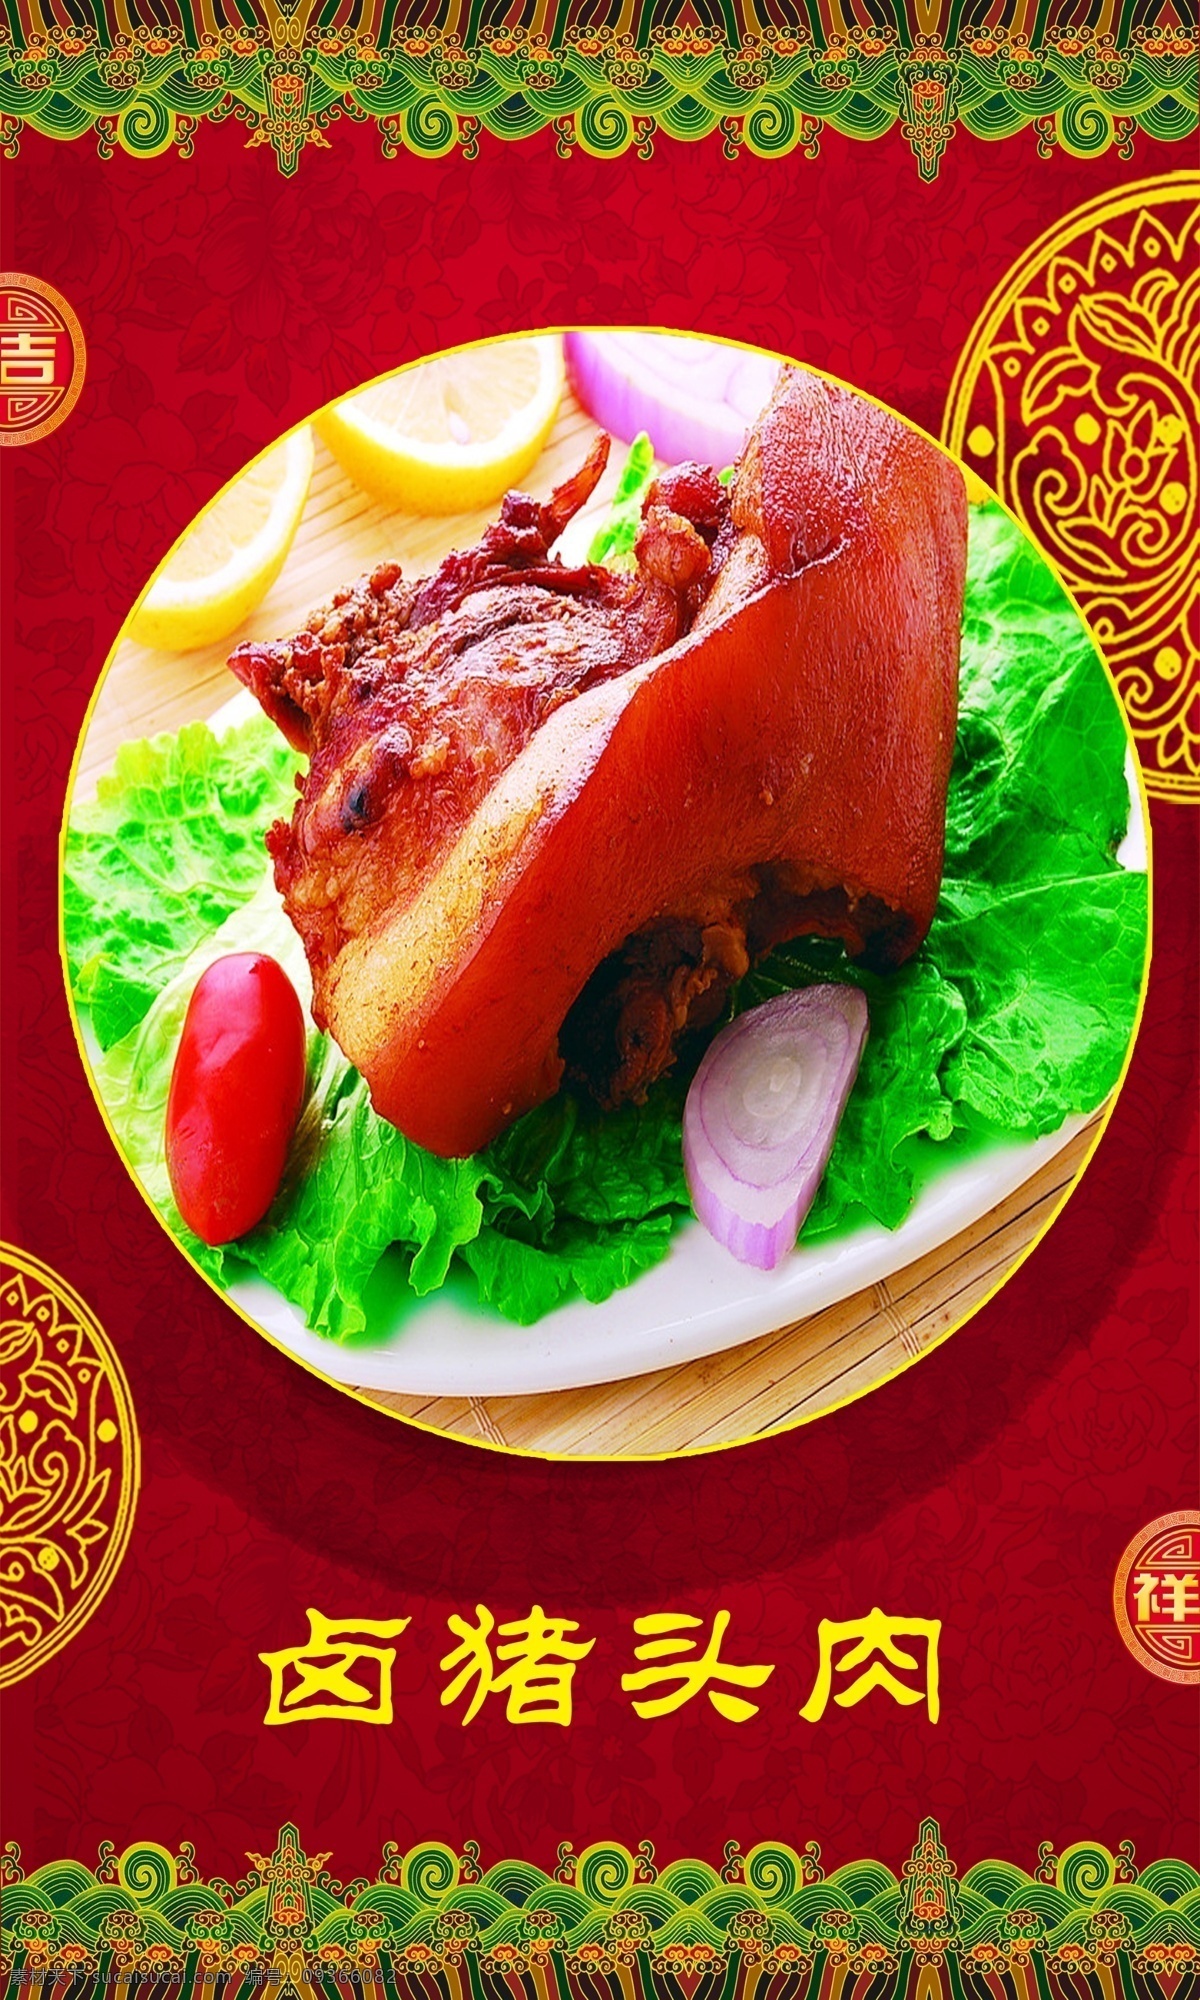 卤猪头肉 价目表 中国风 假一赔十 价格 广告设计模板 源文件